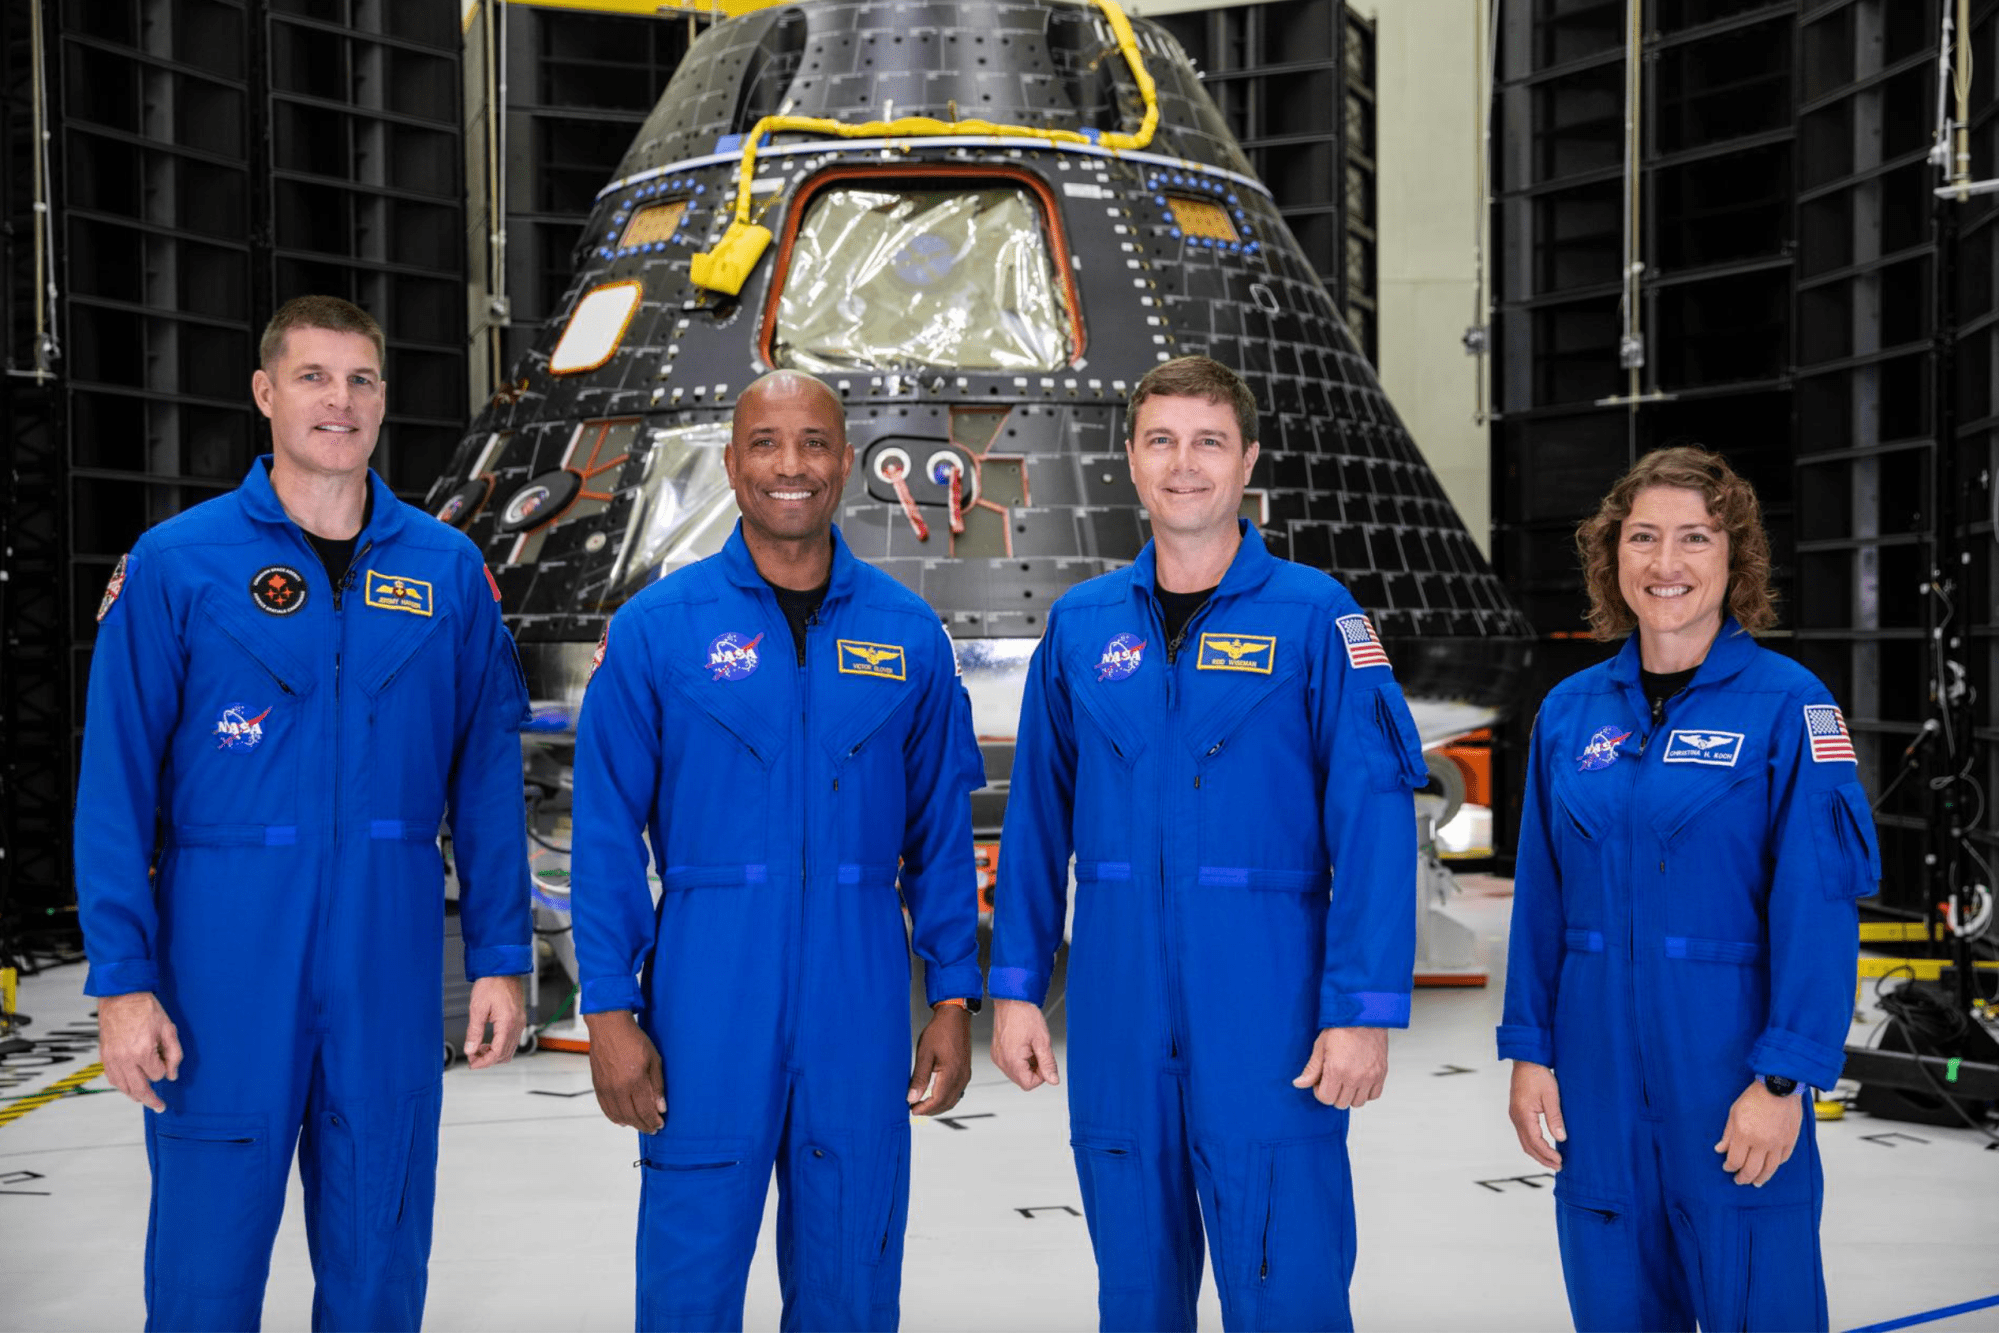 Los cuatro integrantes de la tripulación de Artemis II aparecen aquí de pie frente a su módulo de la tripulación de la nave espacial Orion el día 8 de agosto de 2023, dentro del Edificio de Operaciones y Comprobación Neil Armstrong en el Centro Espacial Kennedy de la NASA en Florida. Visten el mono azul de astronauta.